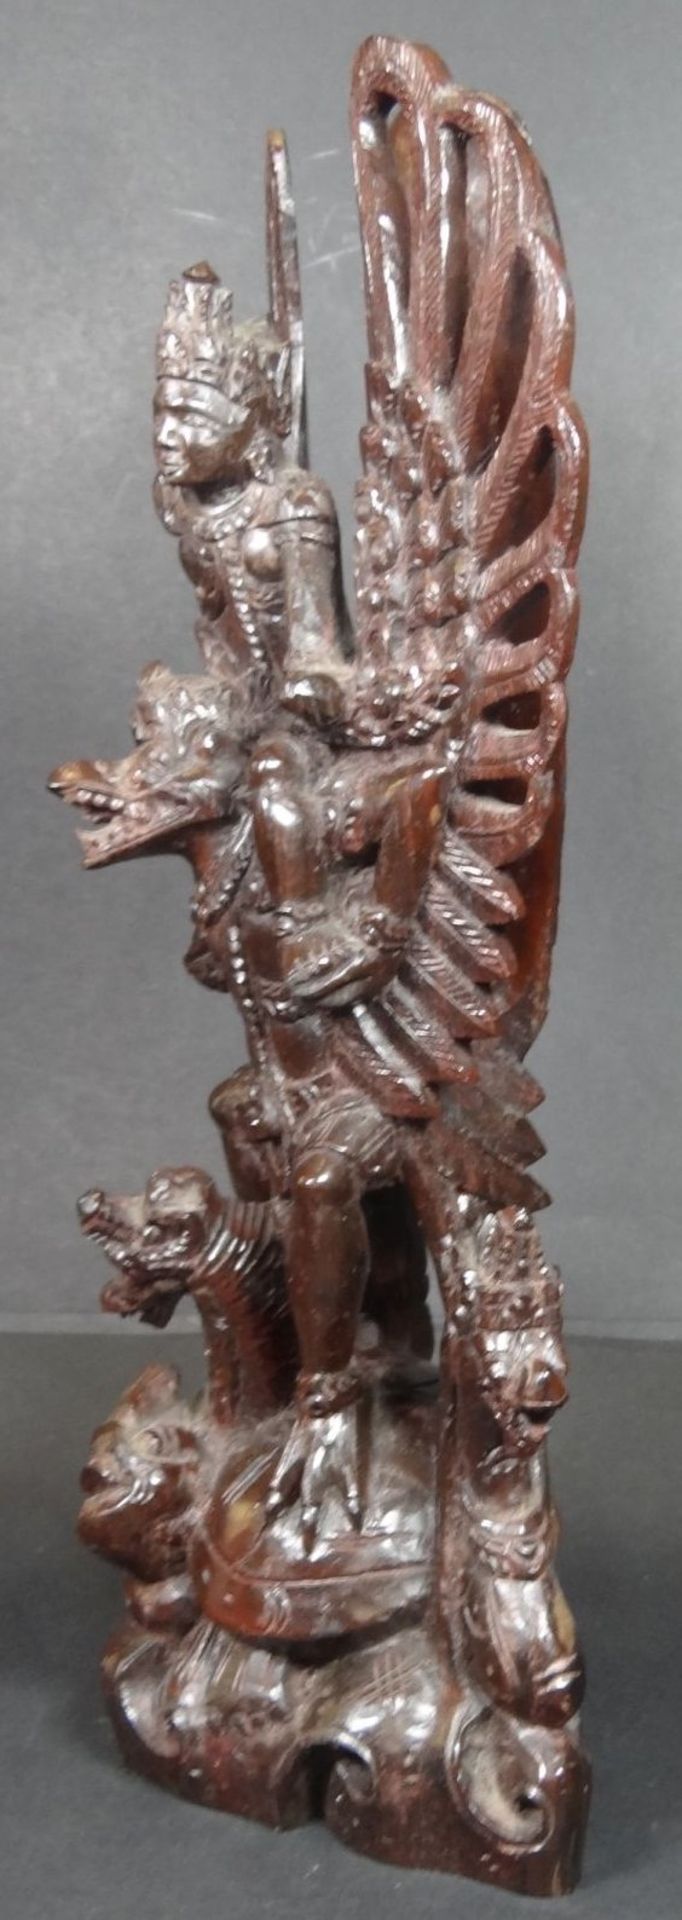 Holzschnitzerei, indon. Gottheit "Garuda" mit Drachenköpfen, H-32 cm, B-16 cm, ält - Bild 5 aus 7